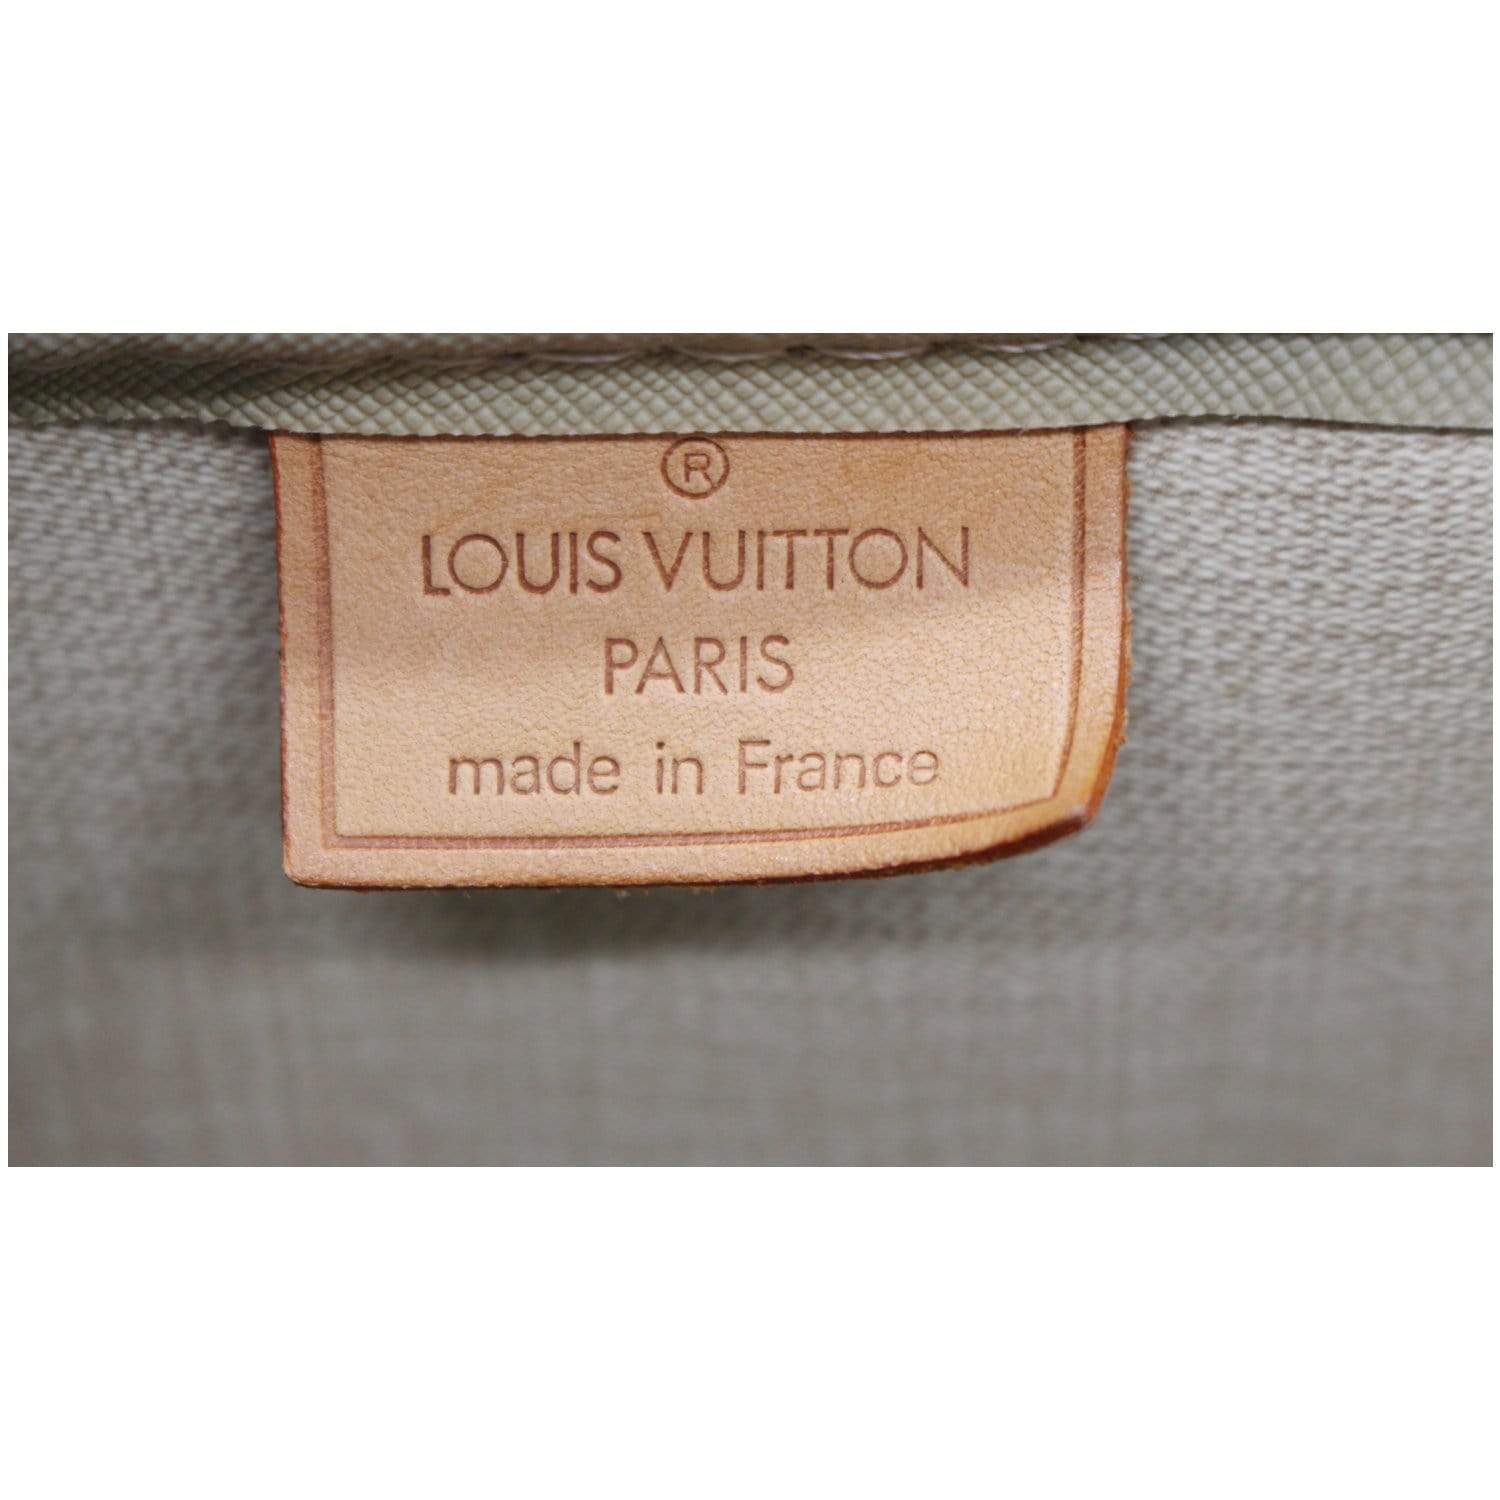 Louis Vuitton Deauville READ DESCRIPTION